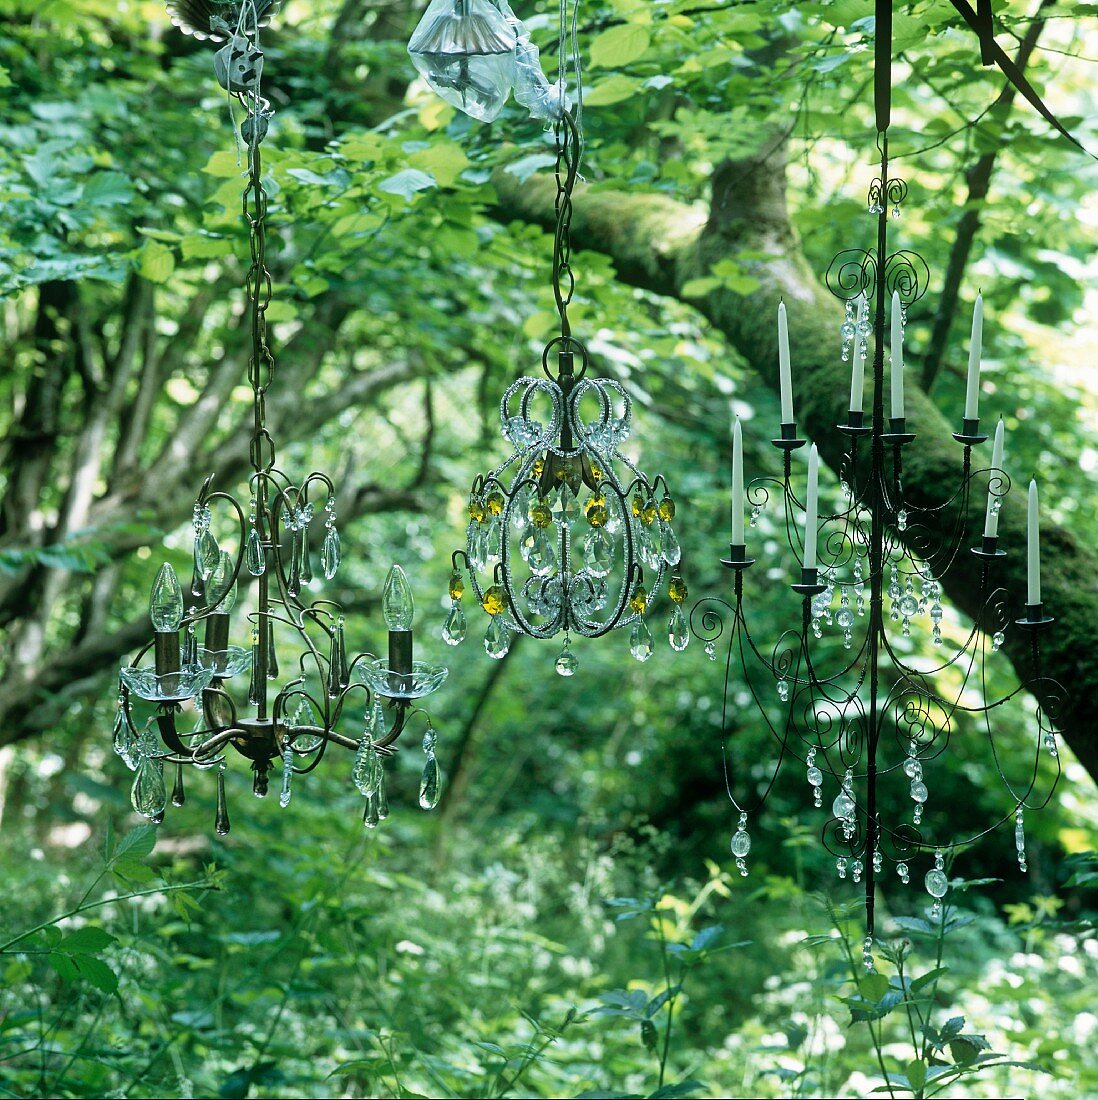 Kerzenleuchter teilweise mit Kerzen und Kristallschmuck am Baum hängend